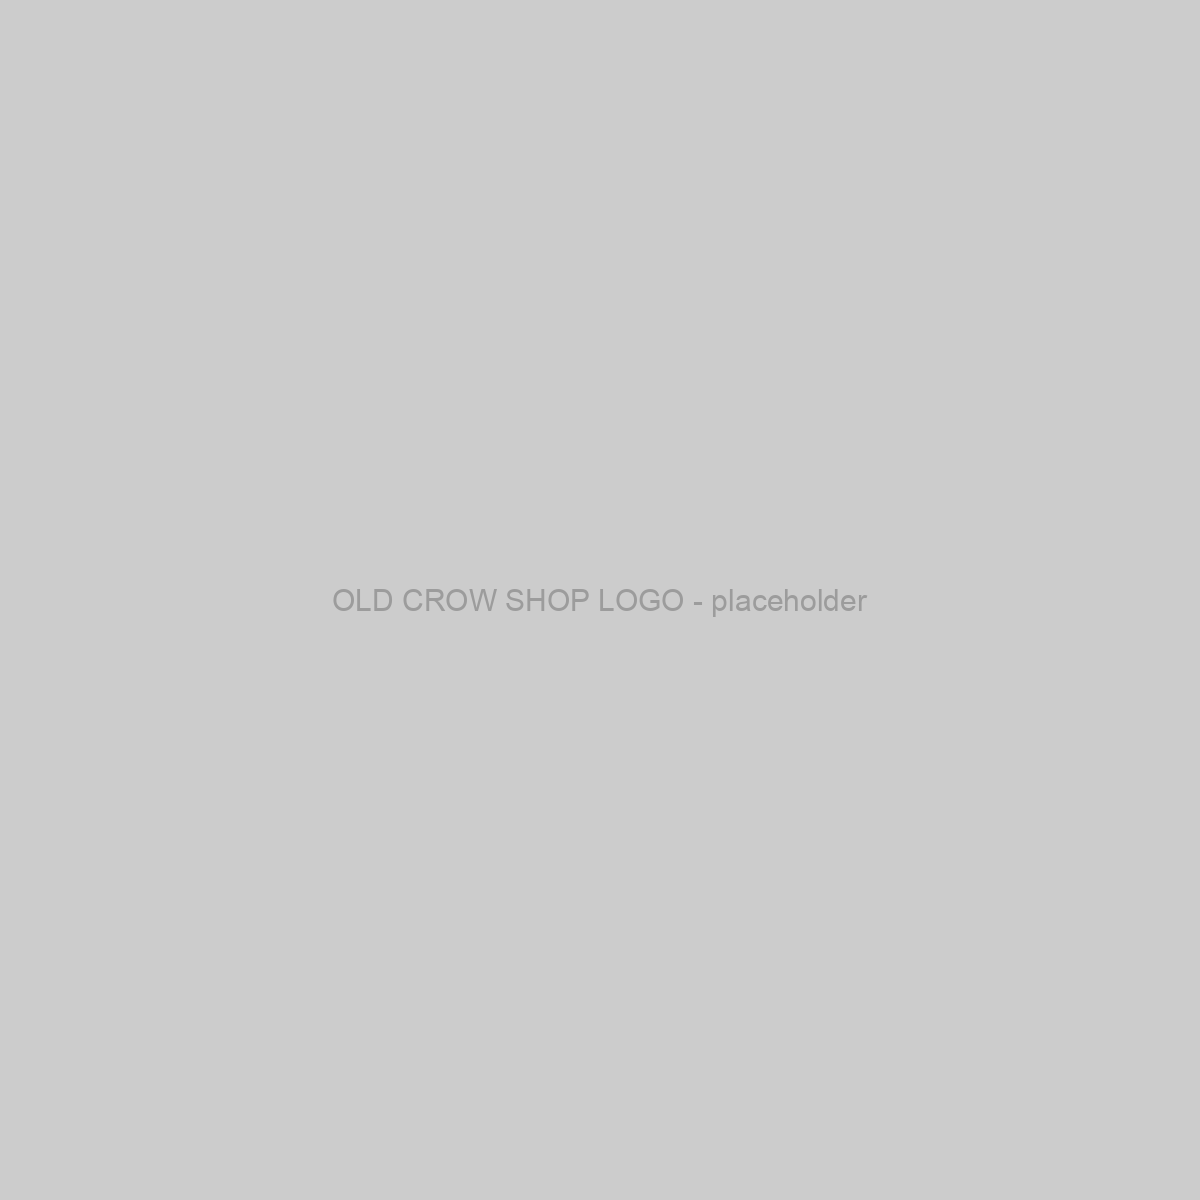 OLD CROW SHOP LOGO - Placeholder Image